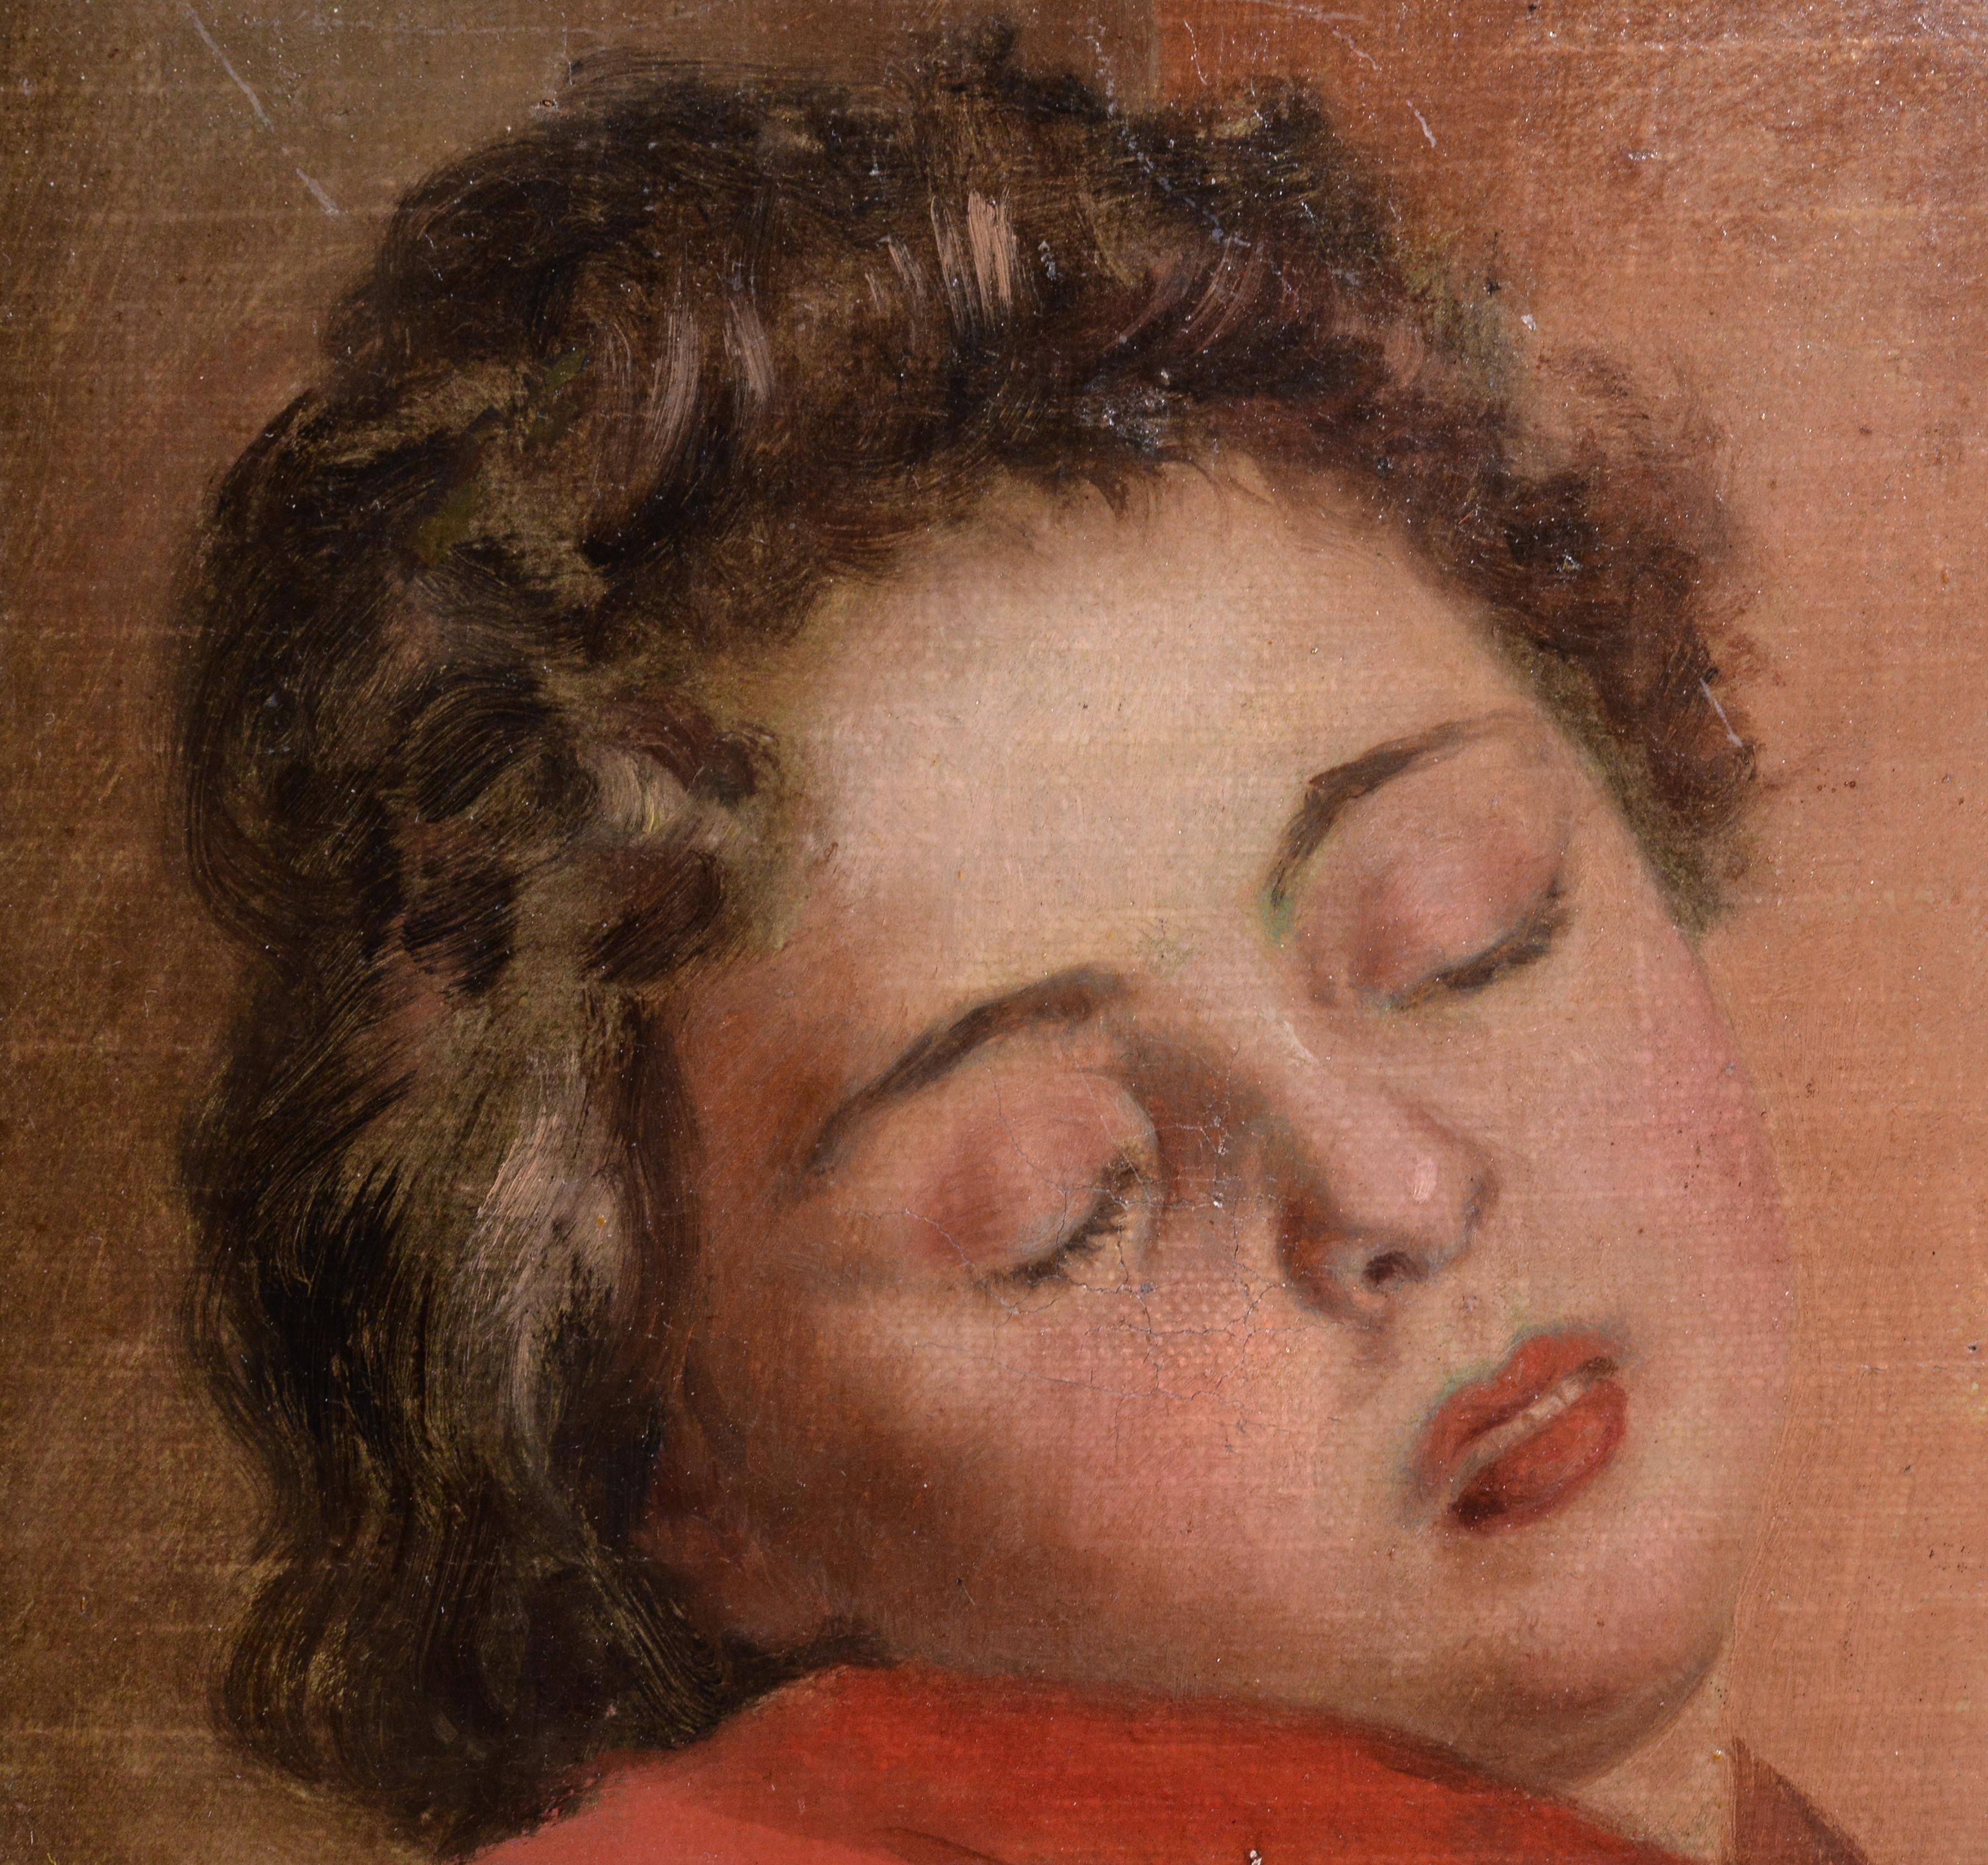 Portrait d'une jeune fille endormie par un maître peintre de genre allemand danois 19ème siècle - Réalisme Painting par Johann August Frederik Carl‏ Lorange